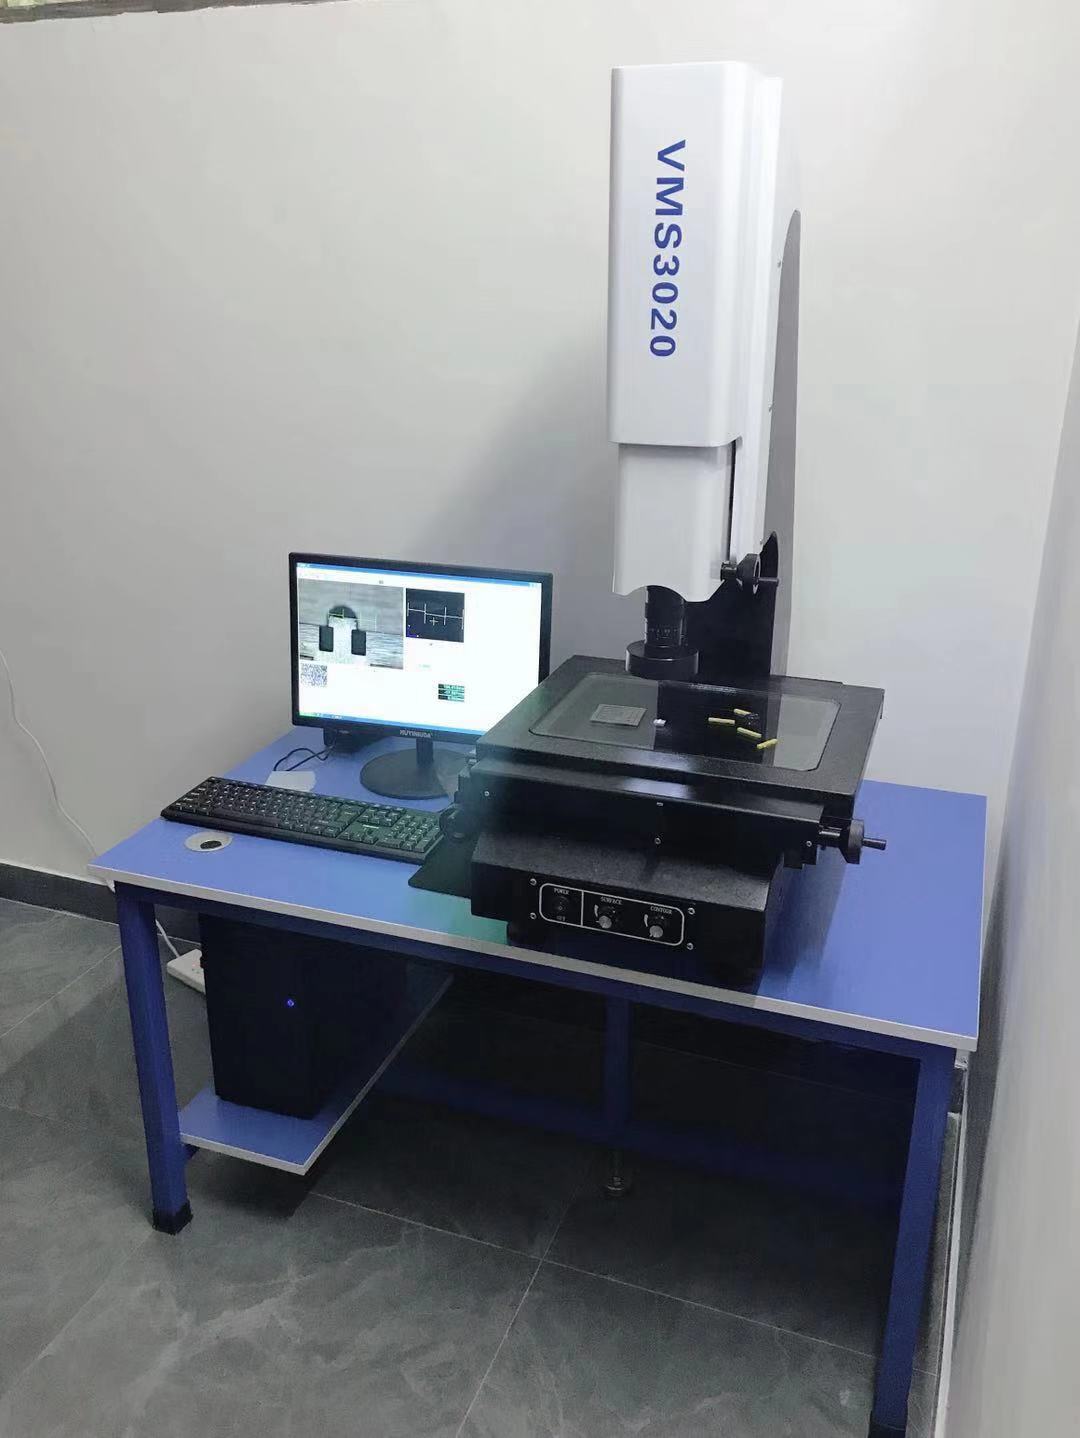 【星准仪器】厂家直销VMS3020二次元影像测量仪 免费送货上门安装培训1